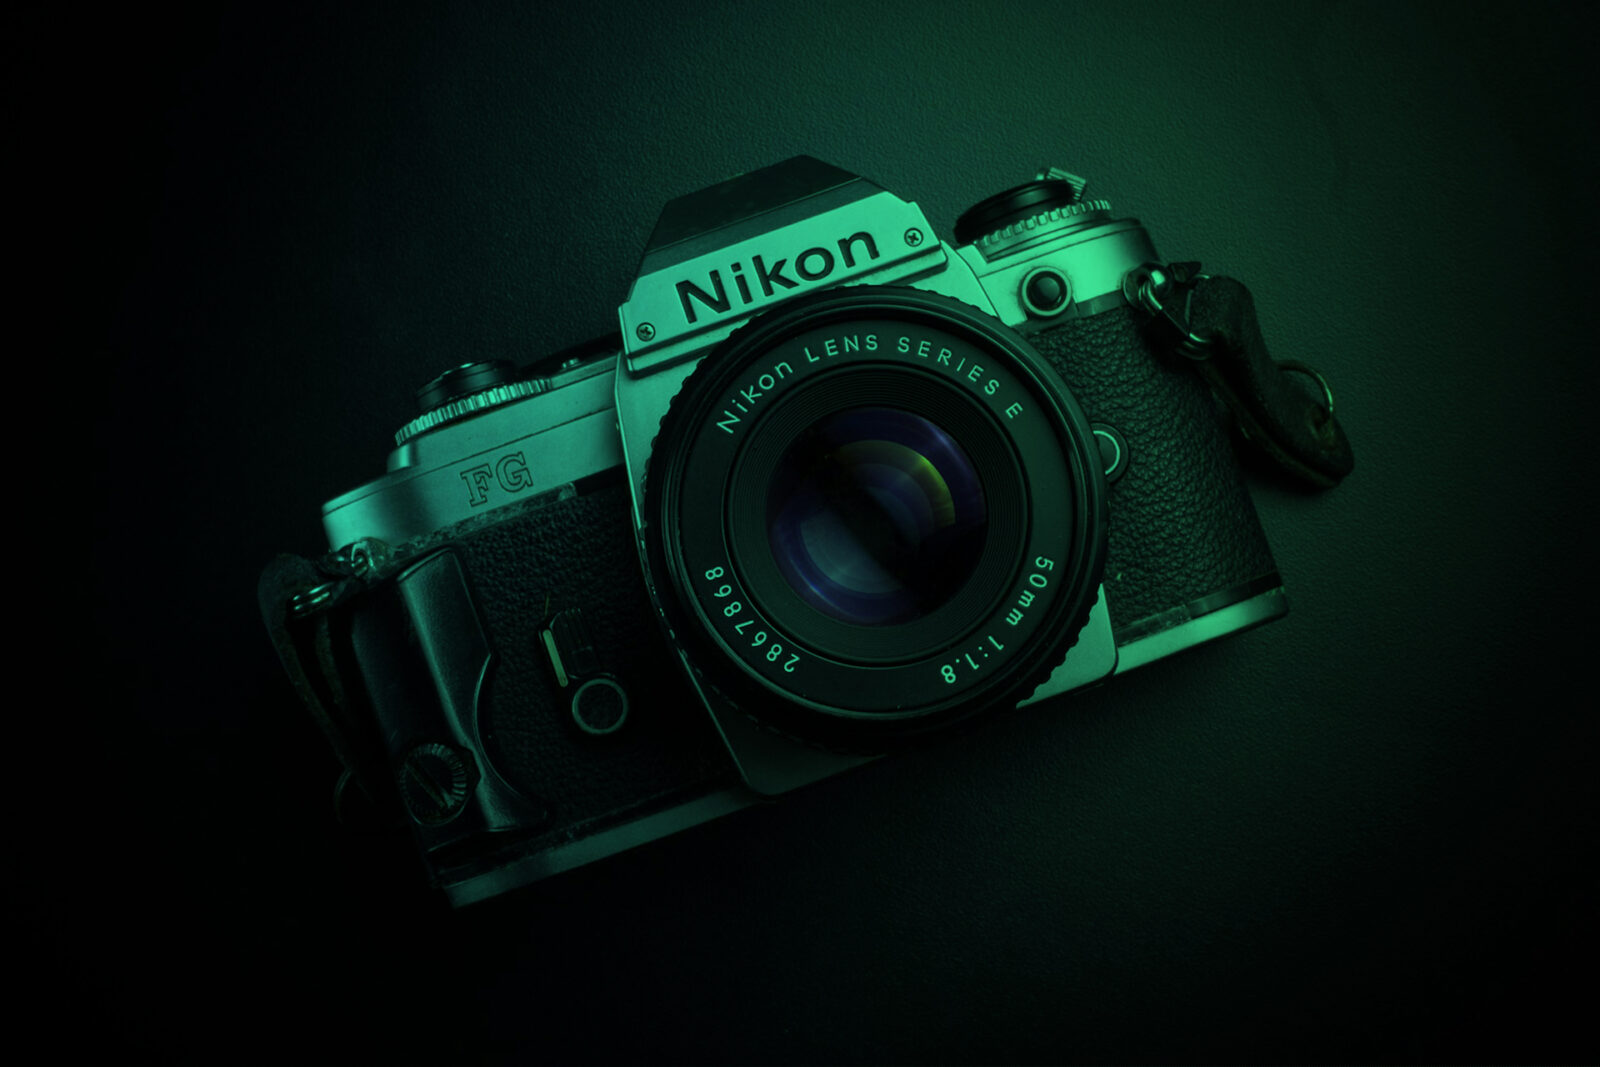 Nikon camera photo gallery download